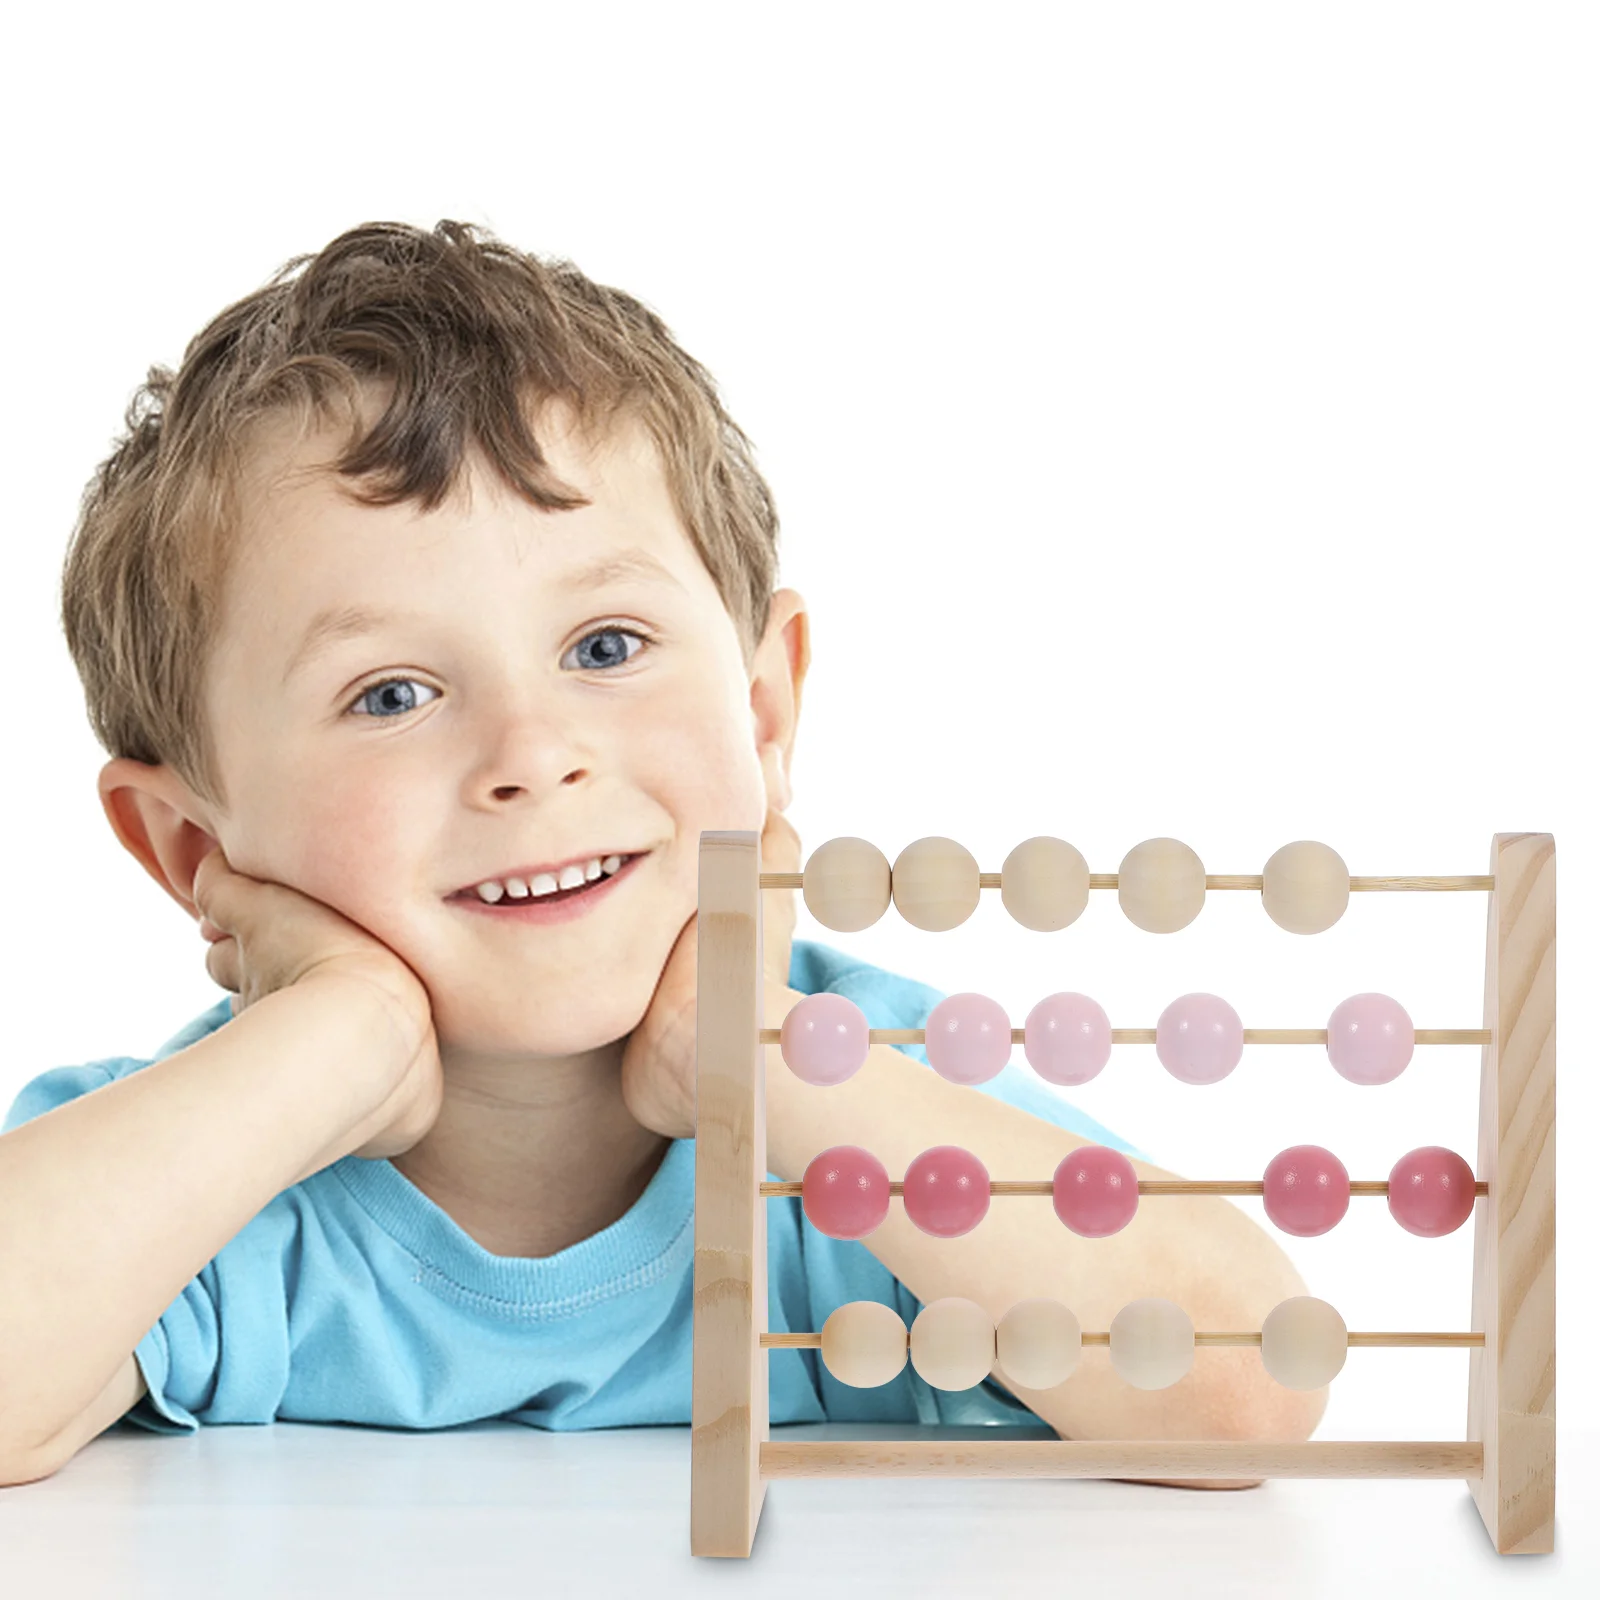 

Abacus математическая обучающая игрушка для детей Обучающие игрушки детский инструмент для обучения математике